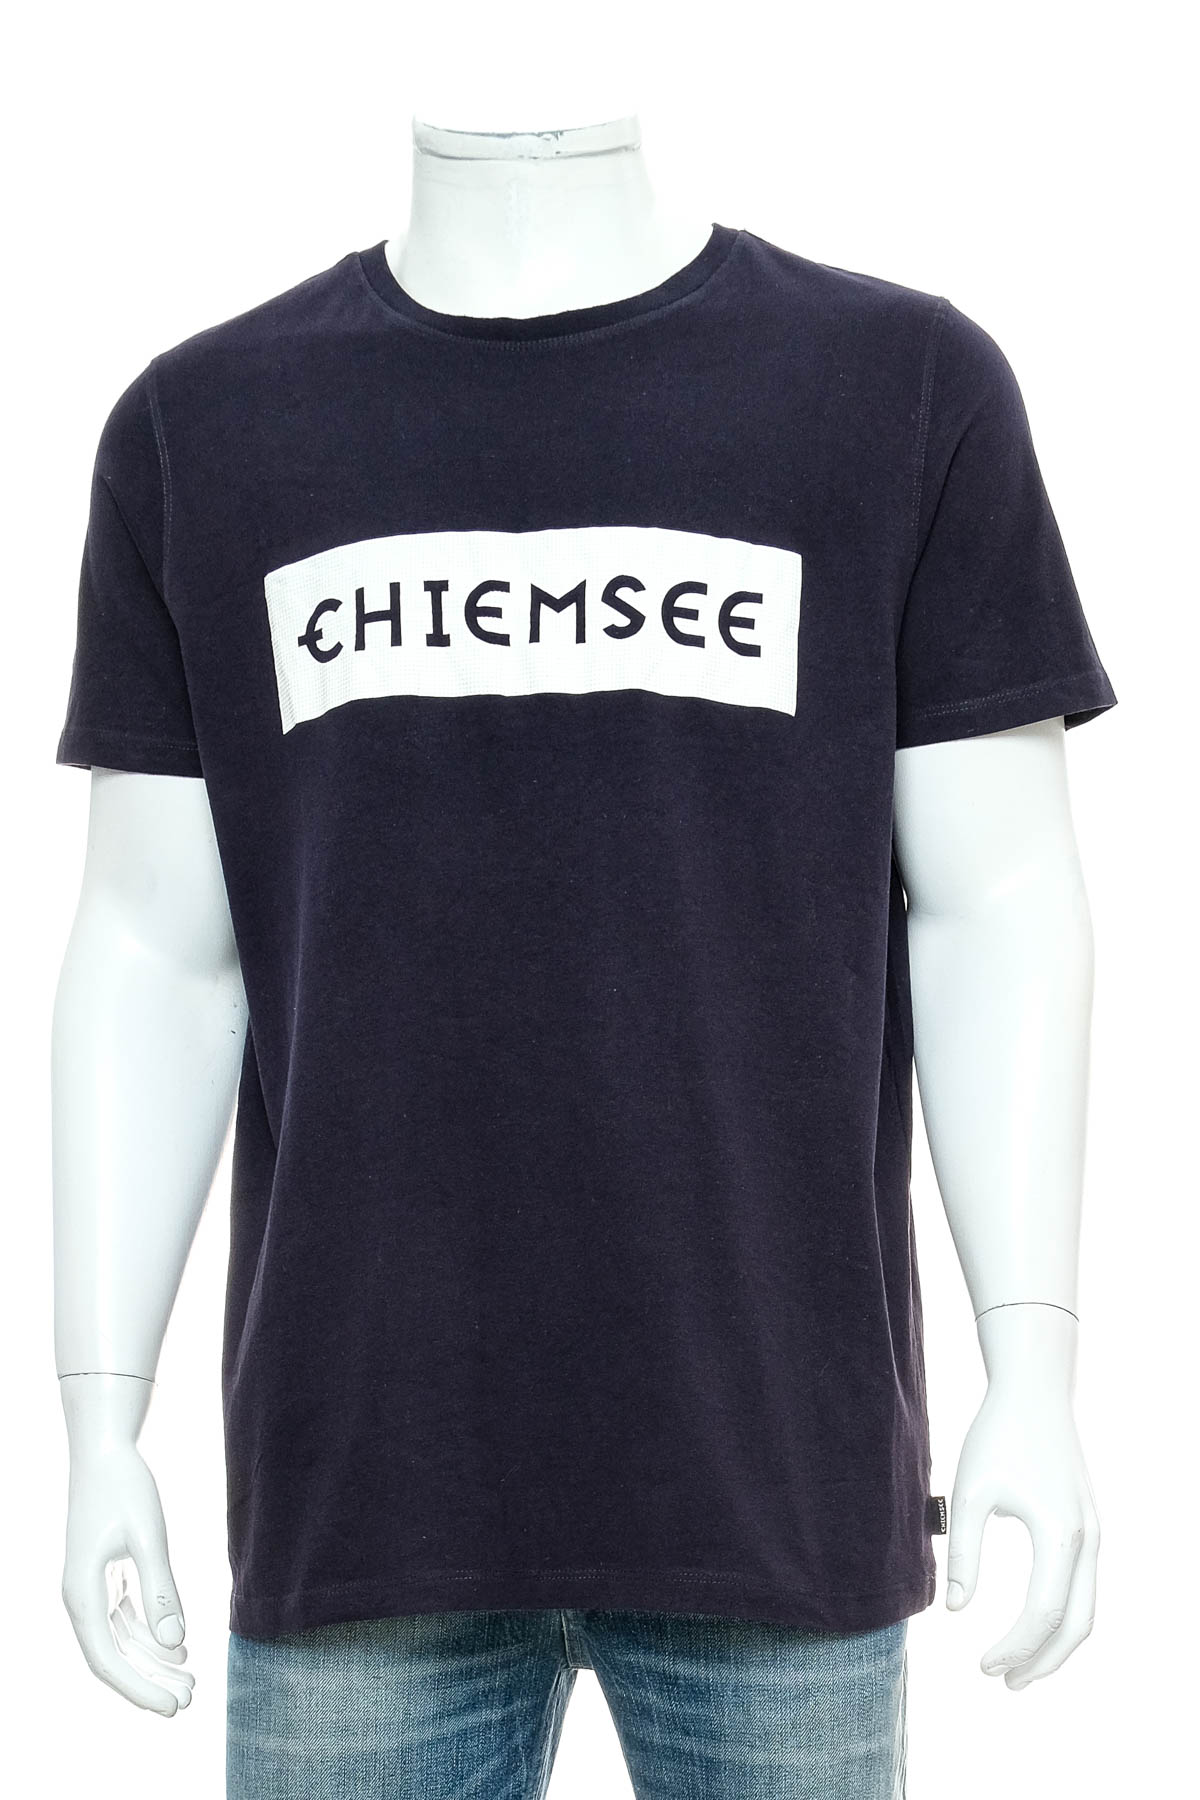 Ανδρικό μπλουζάκι - Chiemsee - 0